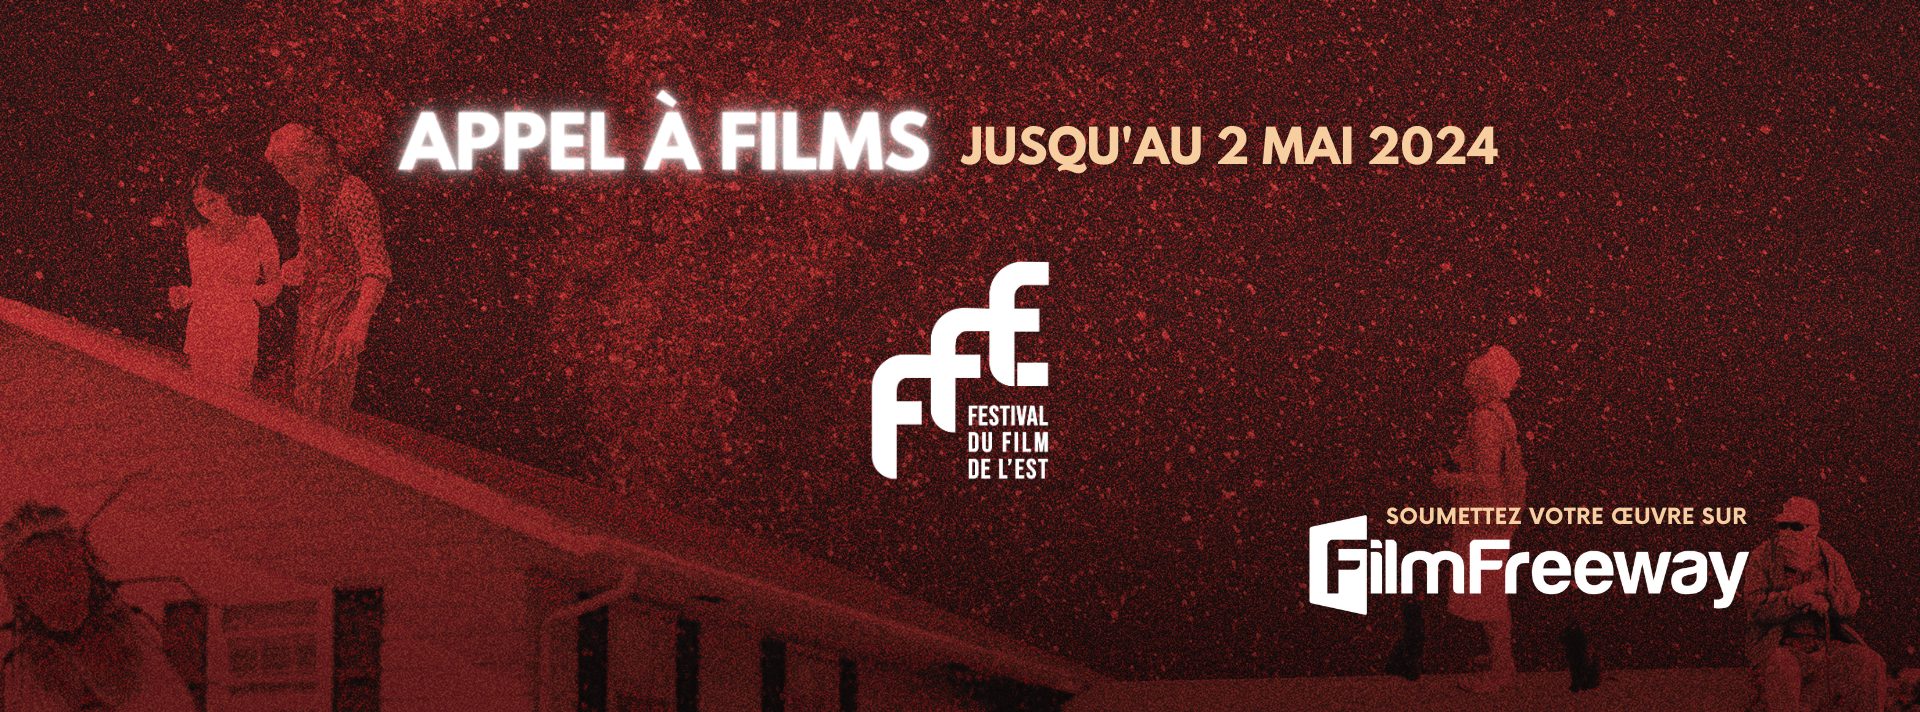 FFE – Festival du Film de l’Est 2024 : l’appel à films est lancé